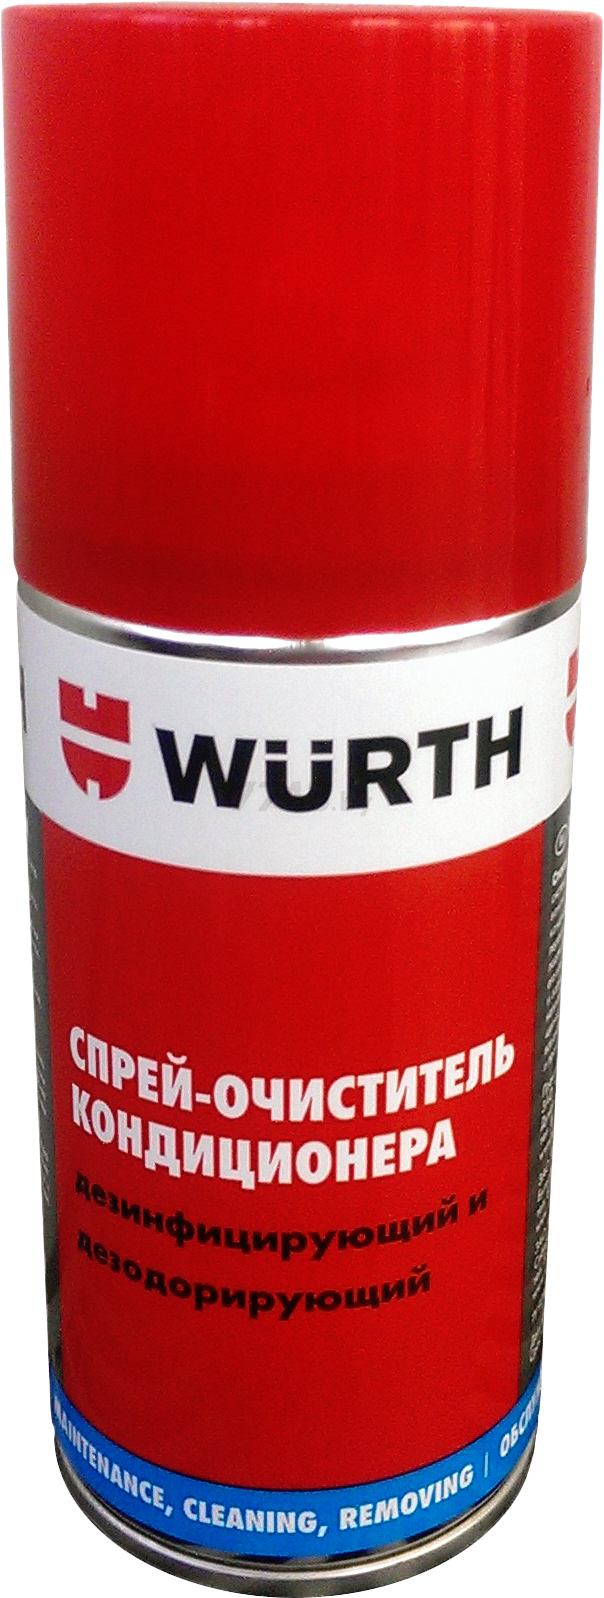 Очиститель кондиционера WURTH 150 мл (089376455)